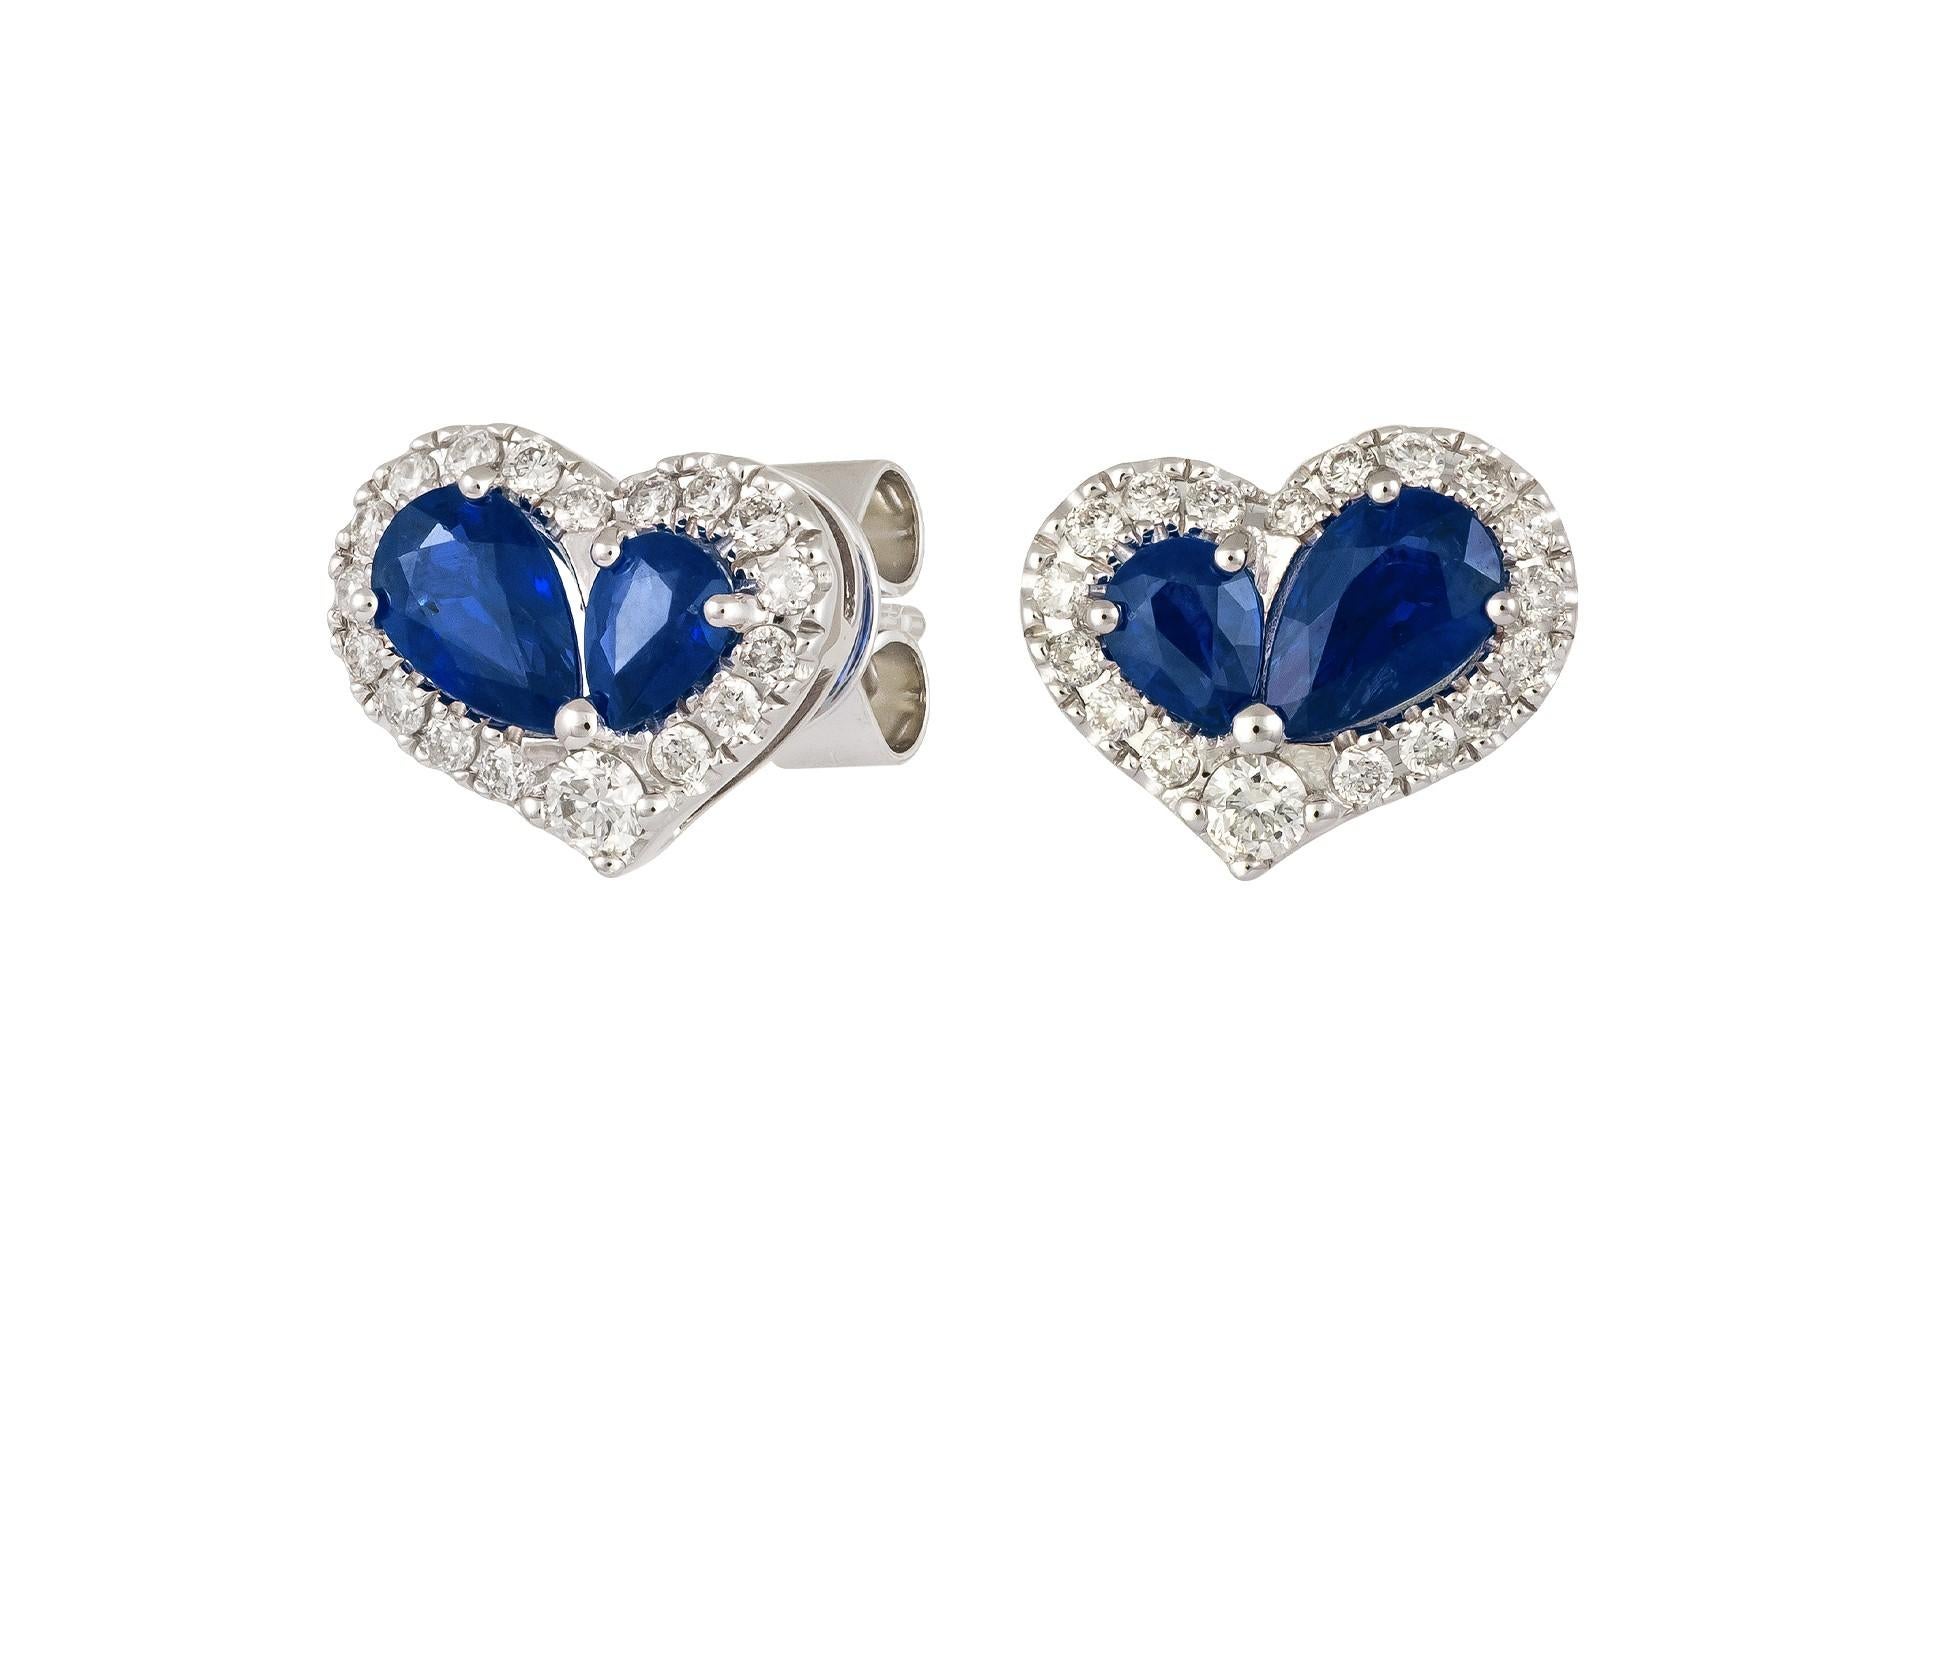 L'article suivant est un Rare Important Radiant 18KT Gold Large Rare Gorgeous Fancy Blue Sapphire and Diamond Heart Stud Earrings. Les boucles d'oreilles sont composées de magnifiques saphirs scintillants et de superbes diamants !!! A.C.C. Approx